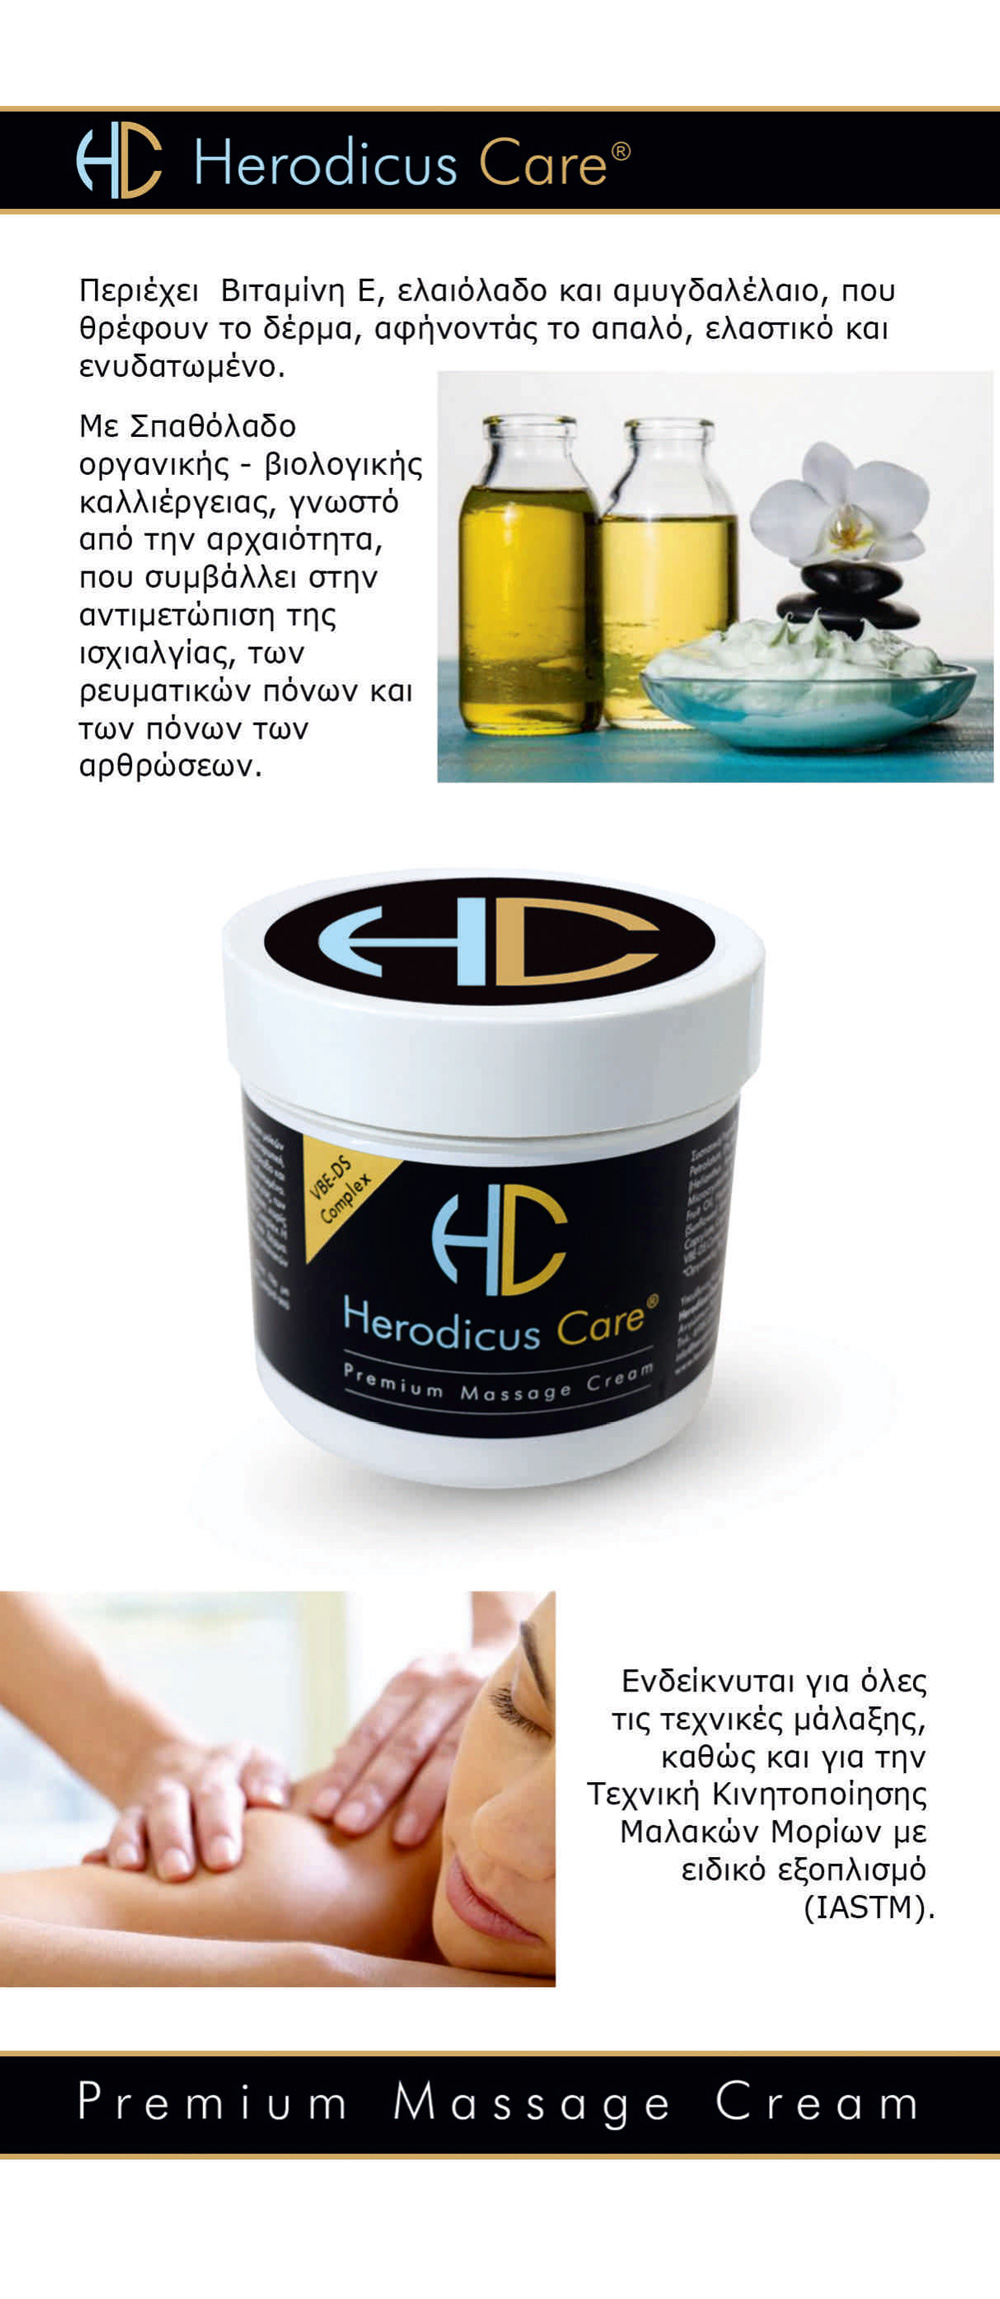 Premium Massage Cream 200ml – Herodicus Care - Skroutz Cyprus